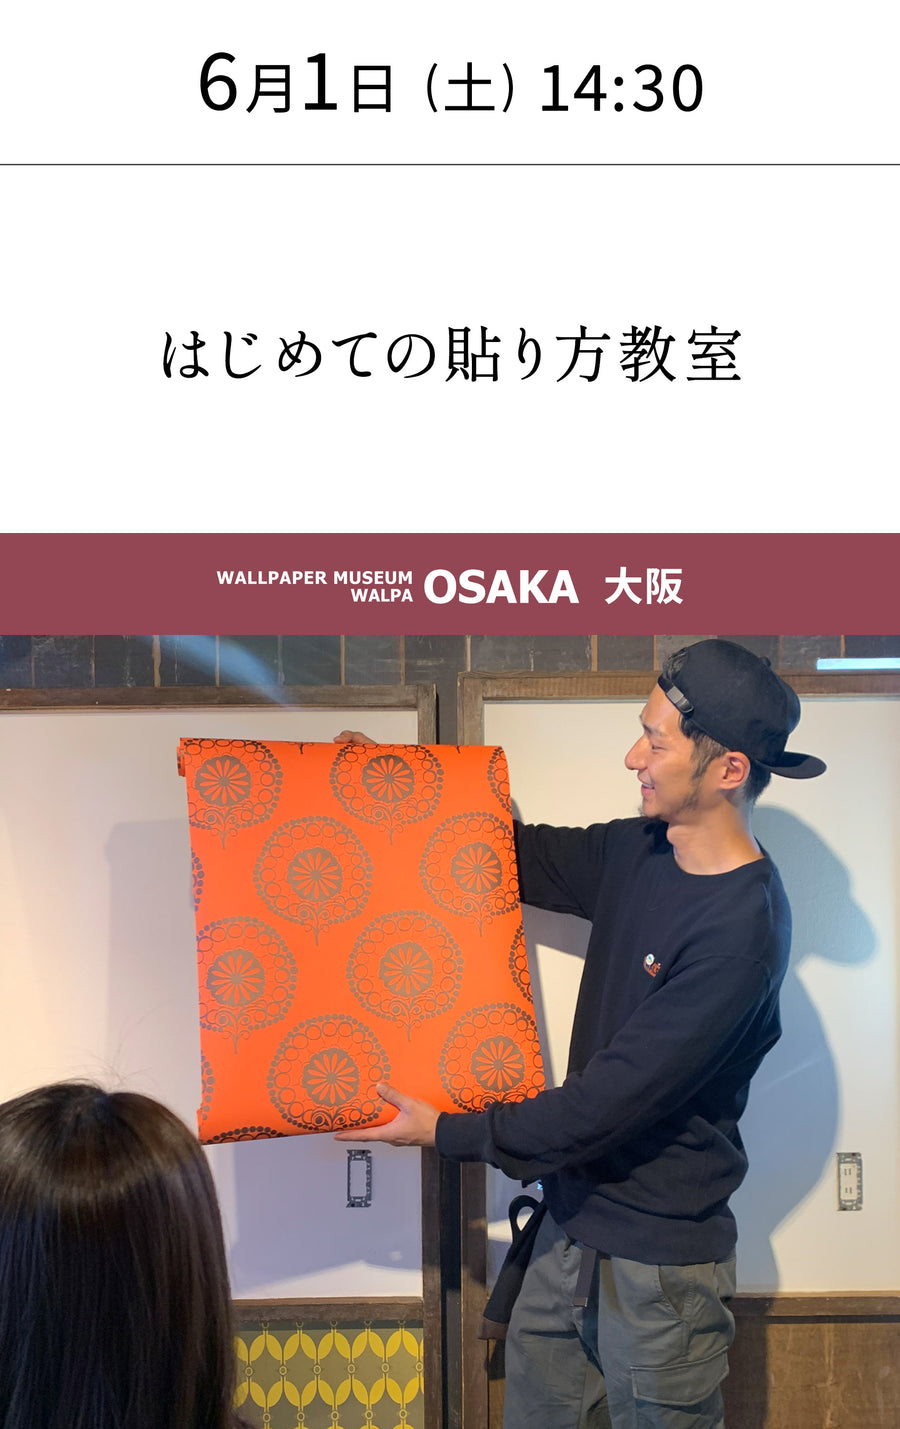 6月1日(土) 14:30～WALLPAPER MUSEUM WALPA / OSAKA ワークショップ 「はじめての貼り方教室」